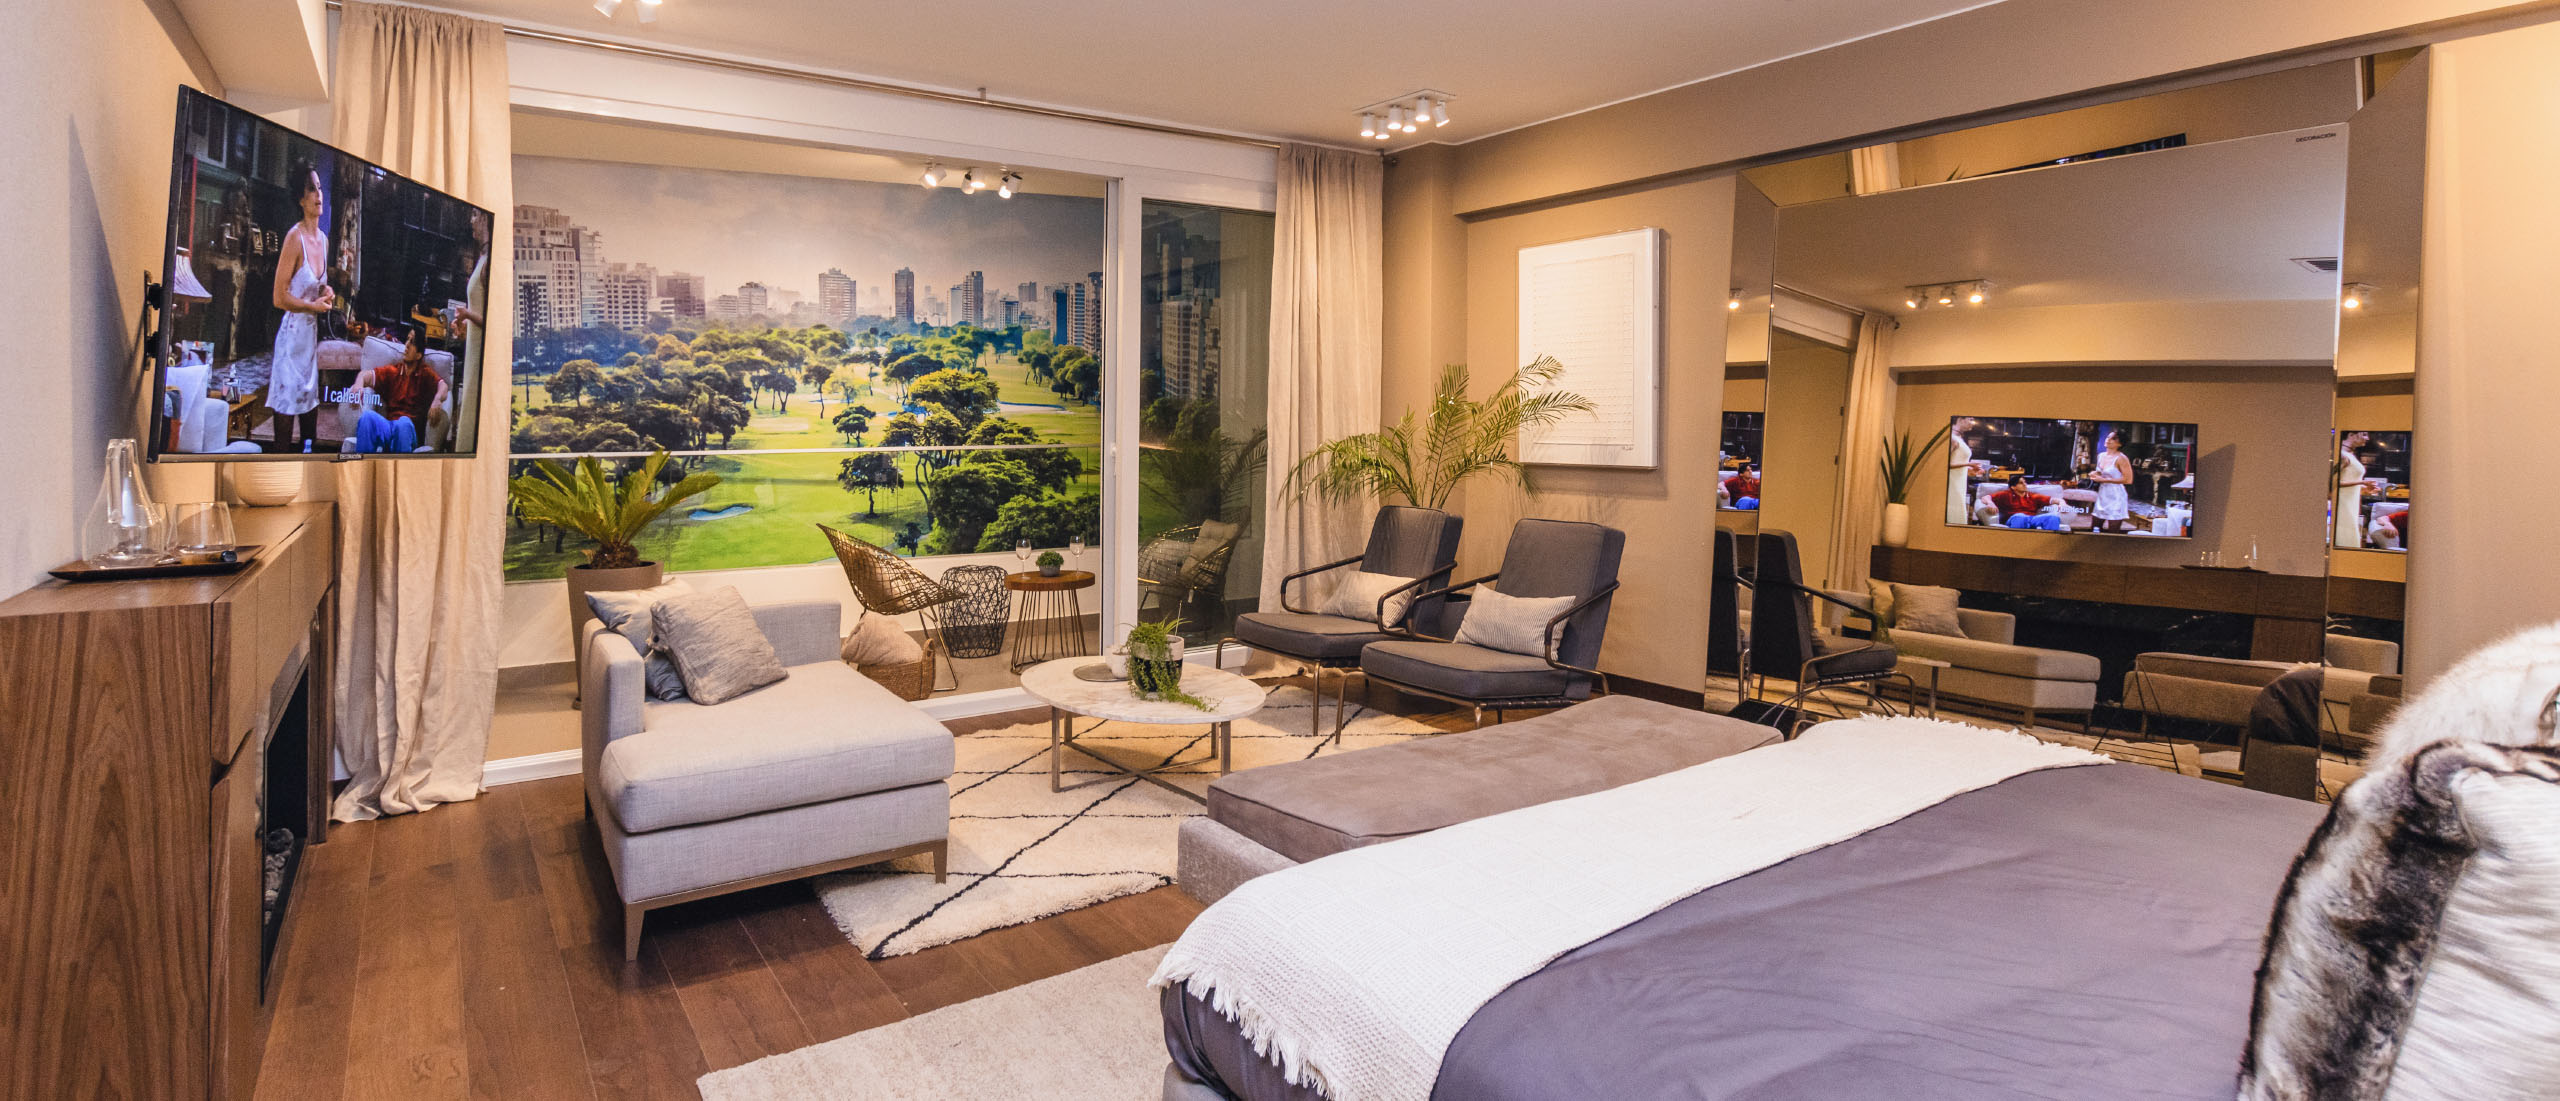 Dormitorio Principal - Showroom del Proyecto The Palms en San Isidro - Inmobiliaria Imagina